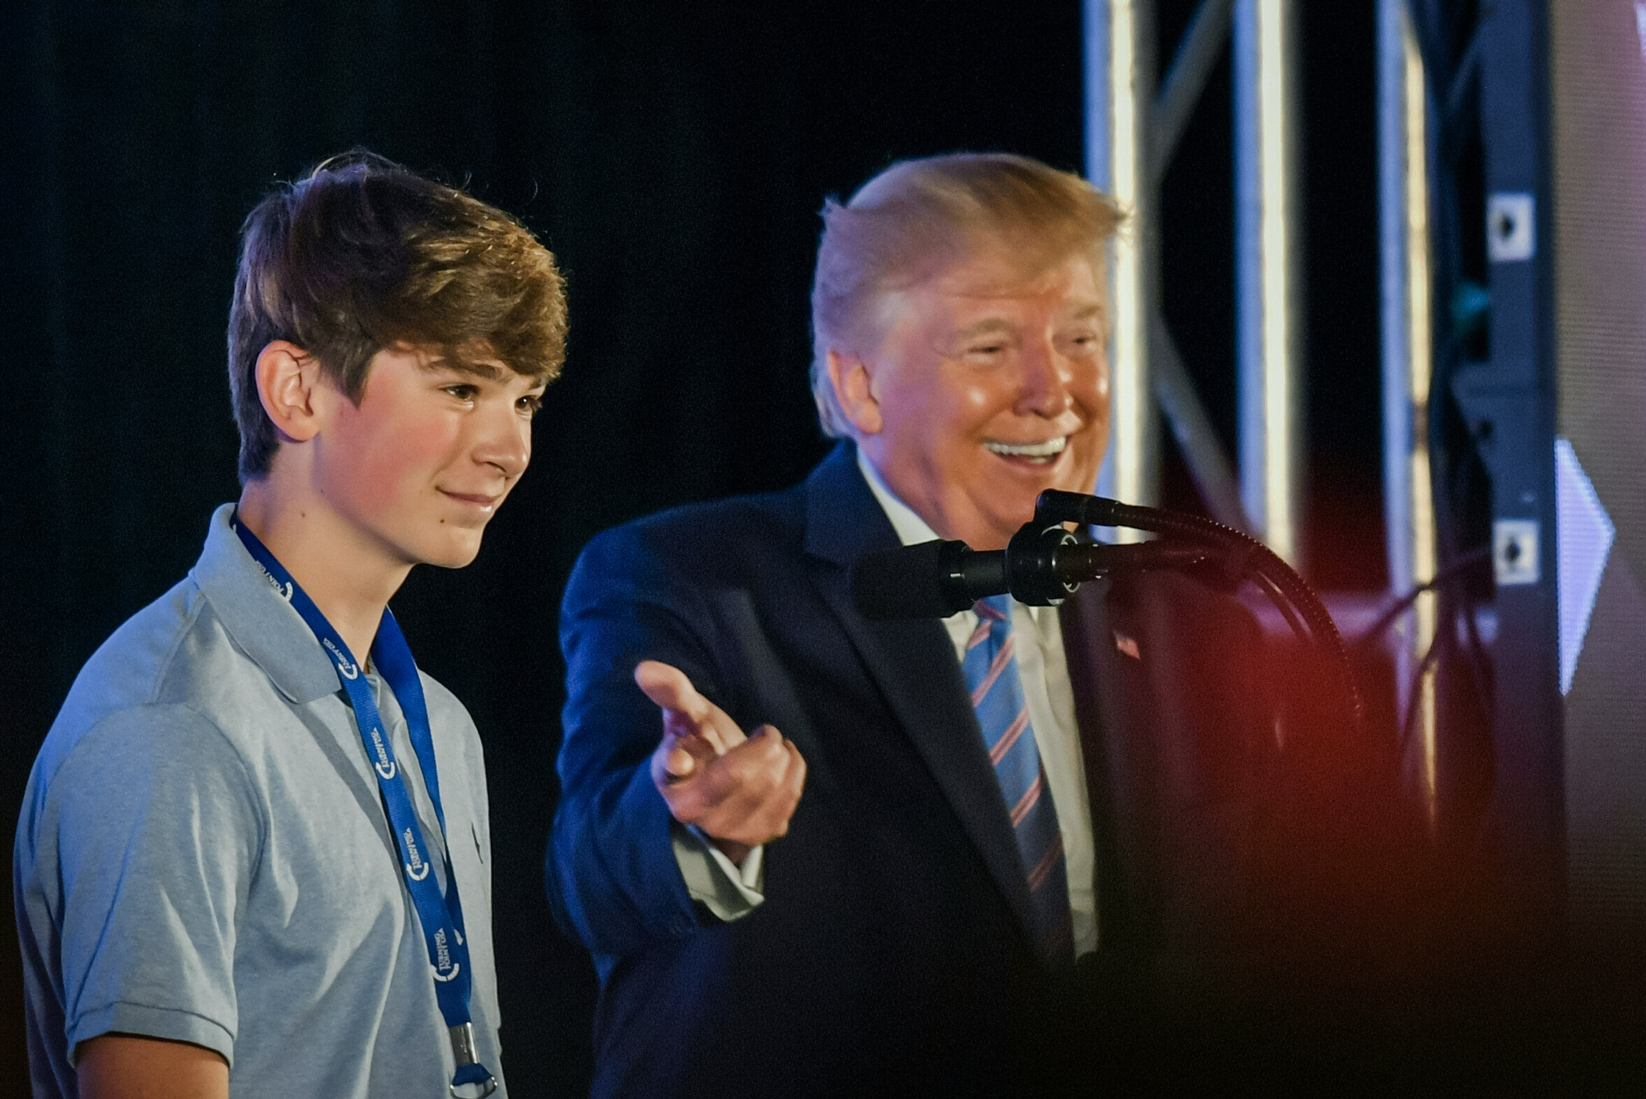 Tổng thống Donald Trump đứng cùng một sinh viên trên sân khấu trong một sự kiện của Turning Point USA ở Hoa Thịnh Đốn vào ngày 23/07/2019. (Ảnh: Nicholas Kamm/AFP qua Getty Images)